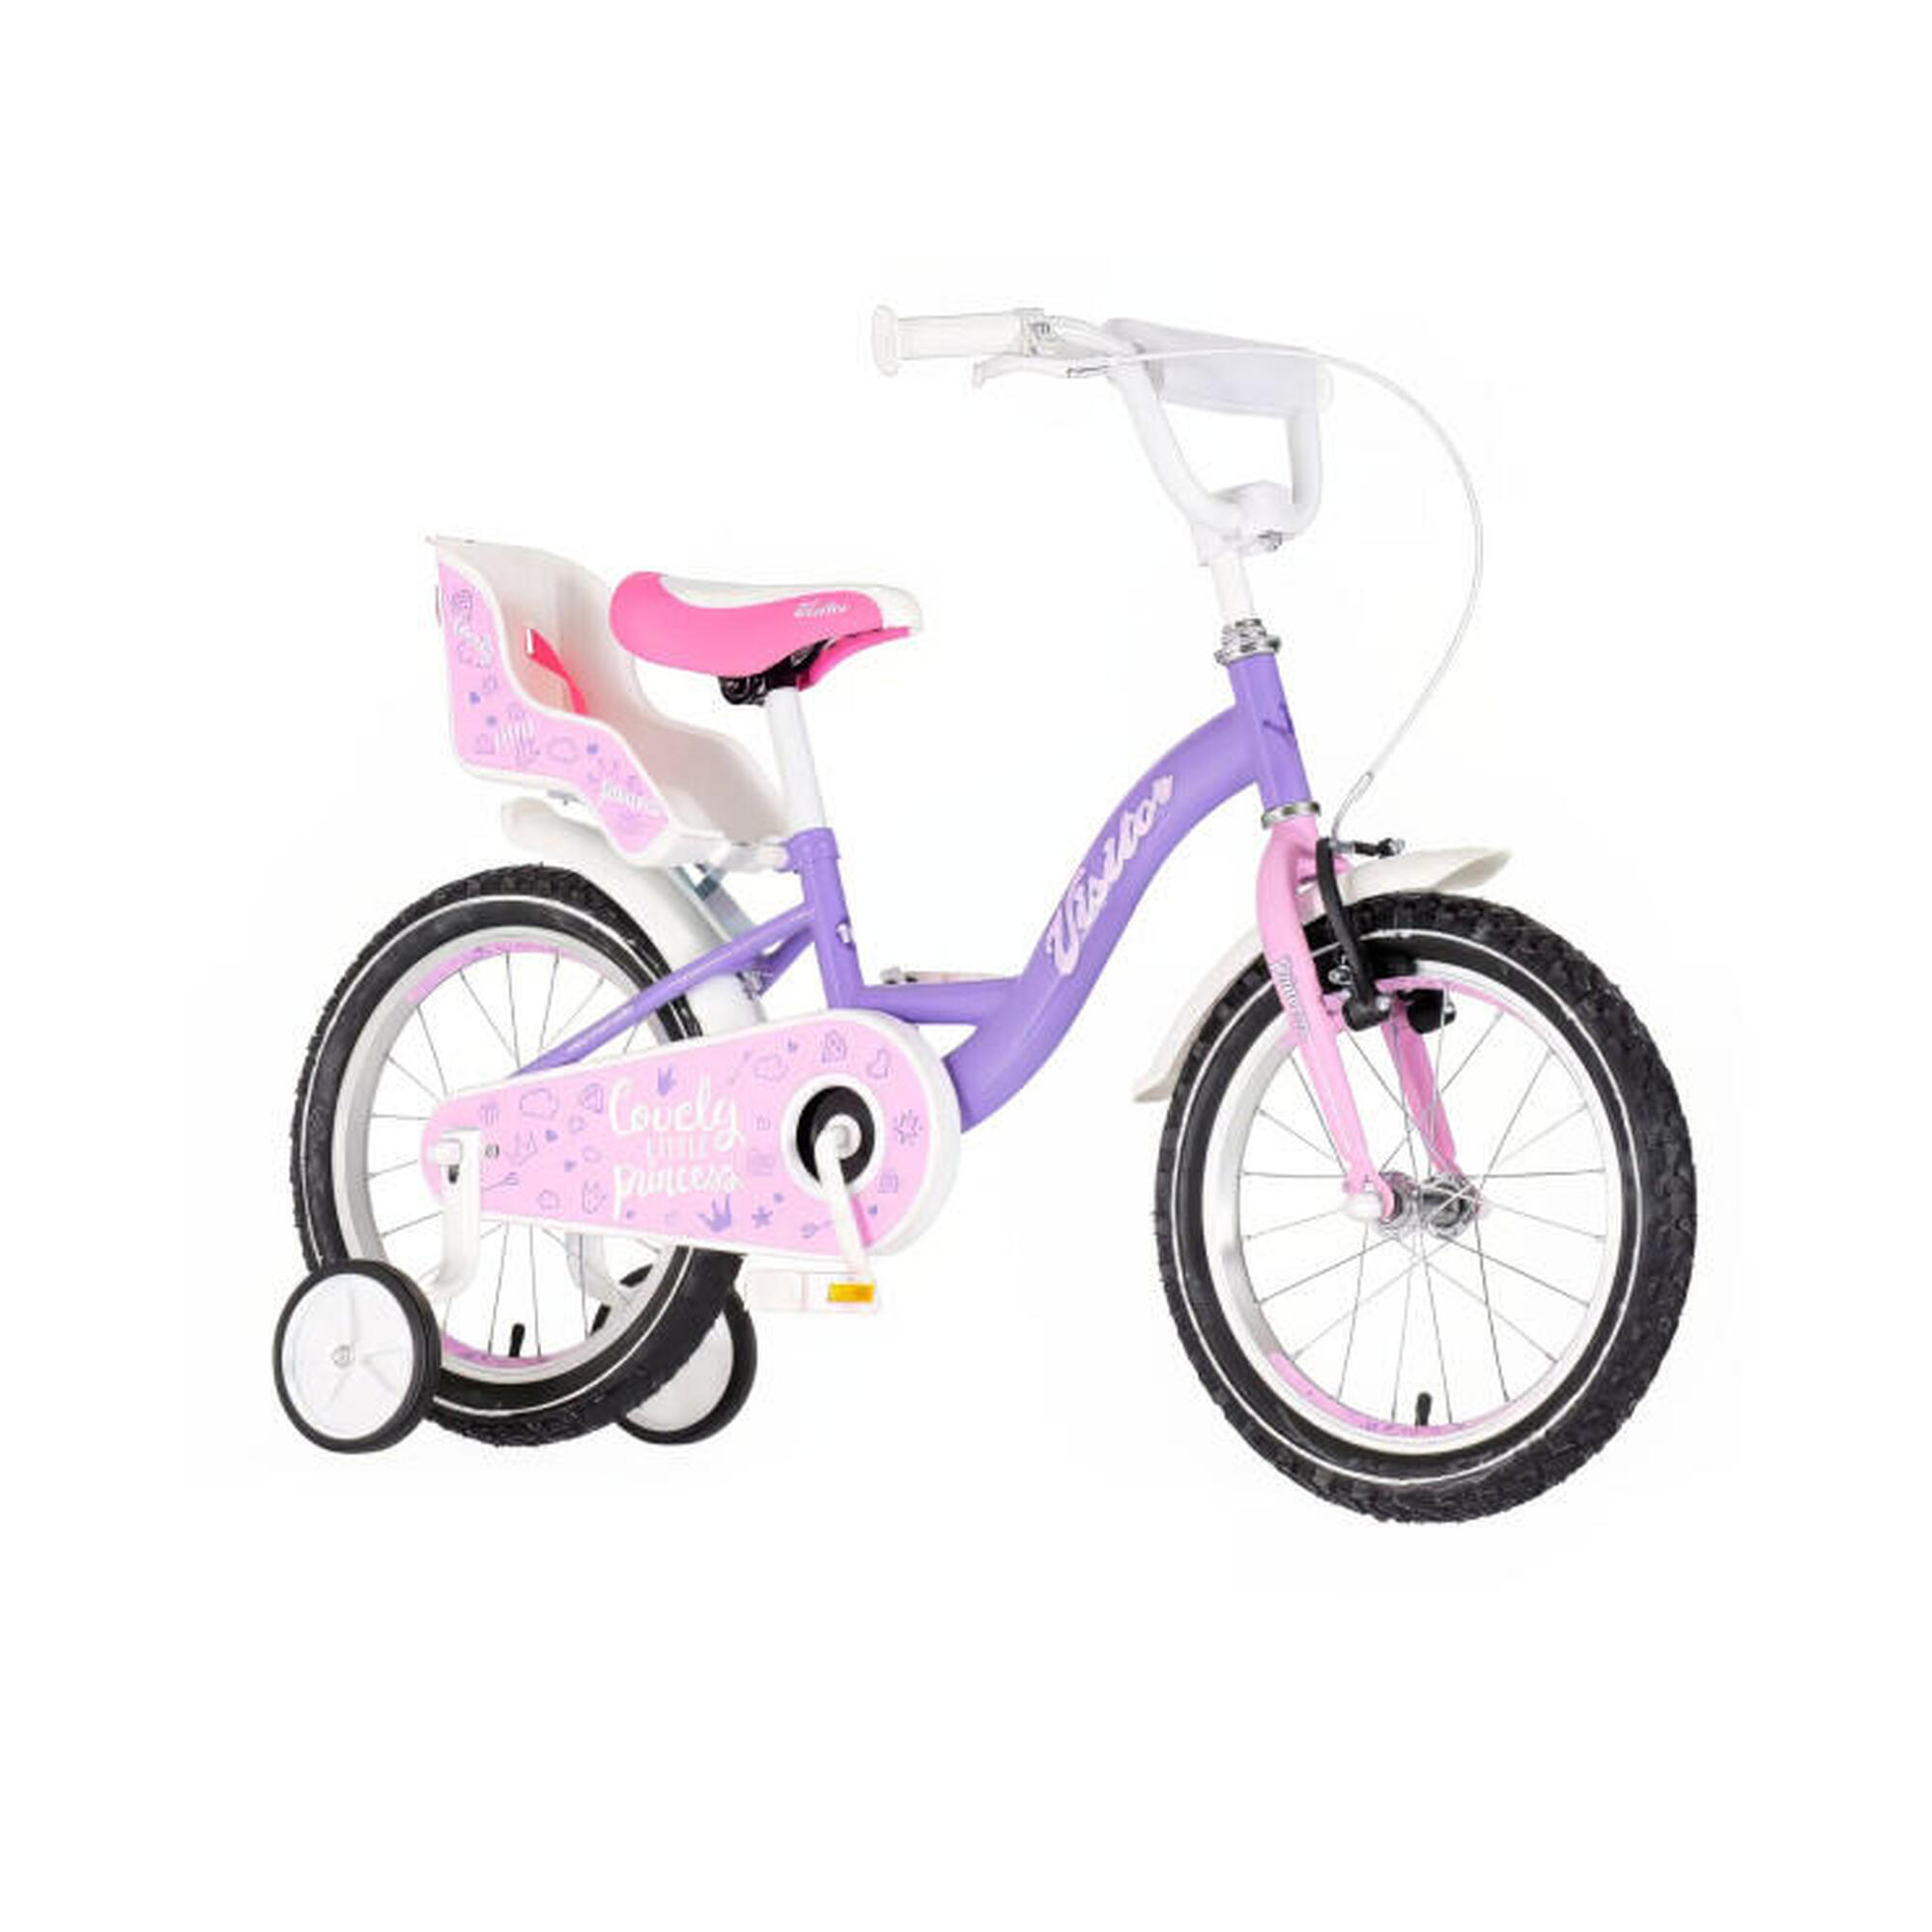 Explorer Lovely Princess 16 királylányos gyerek kerékpár lila